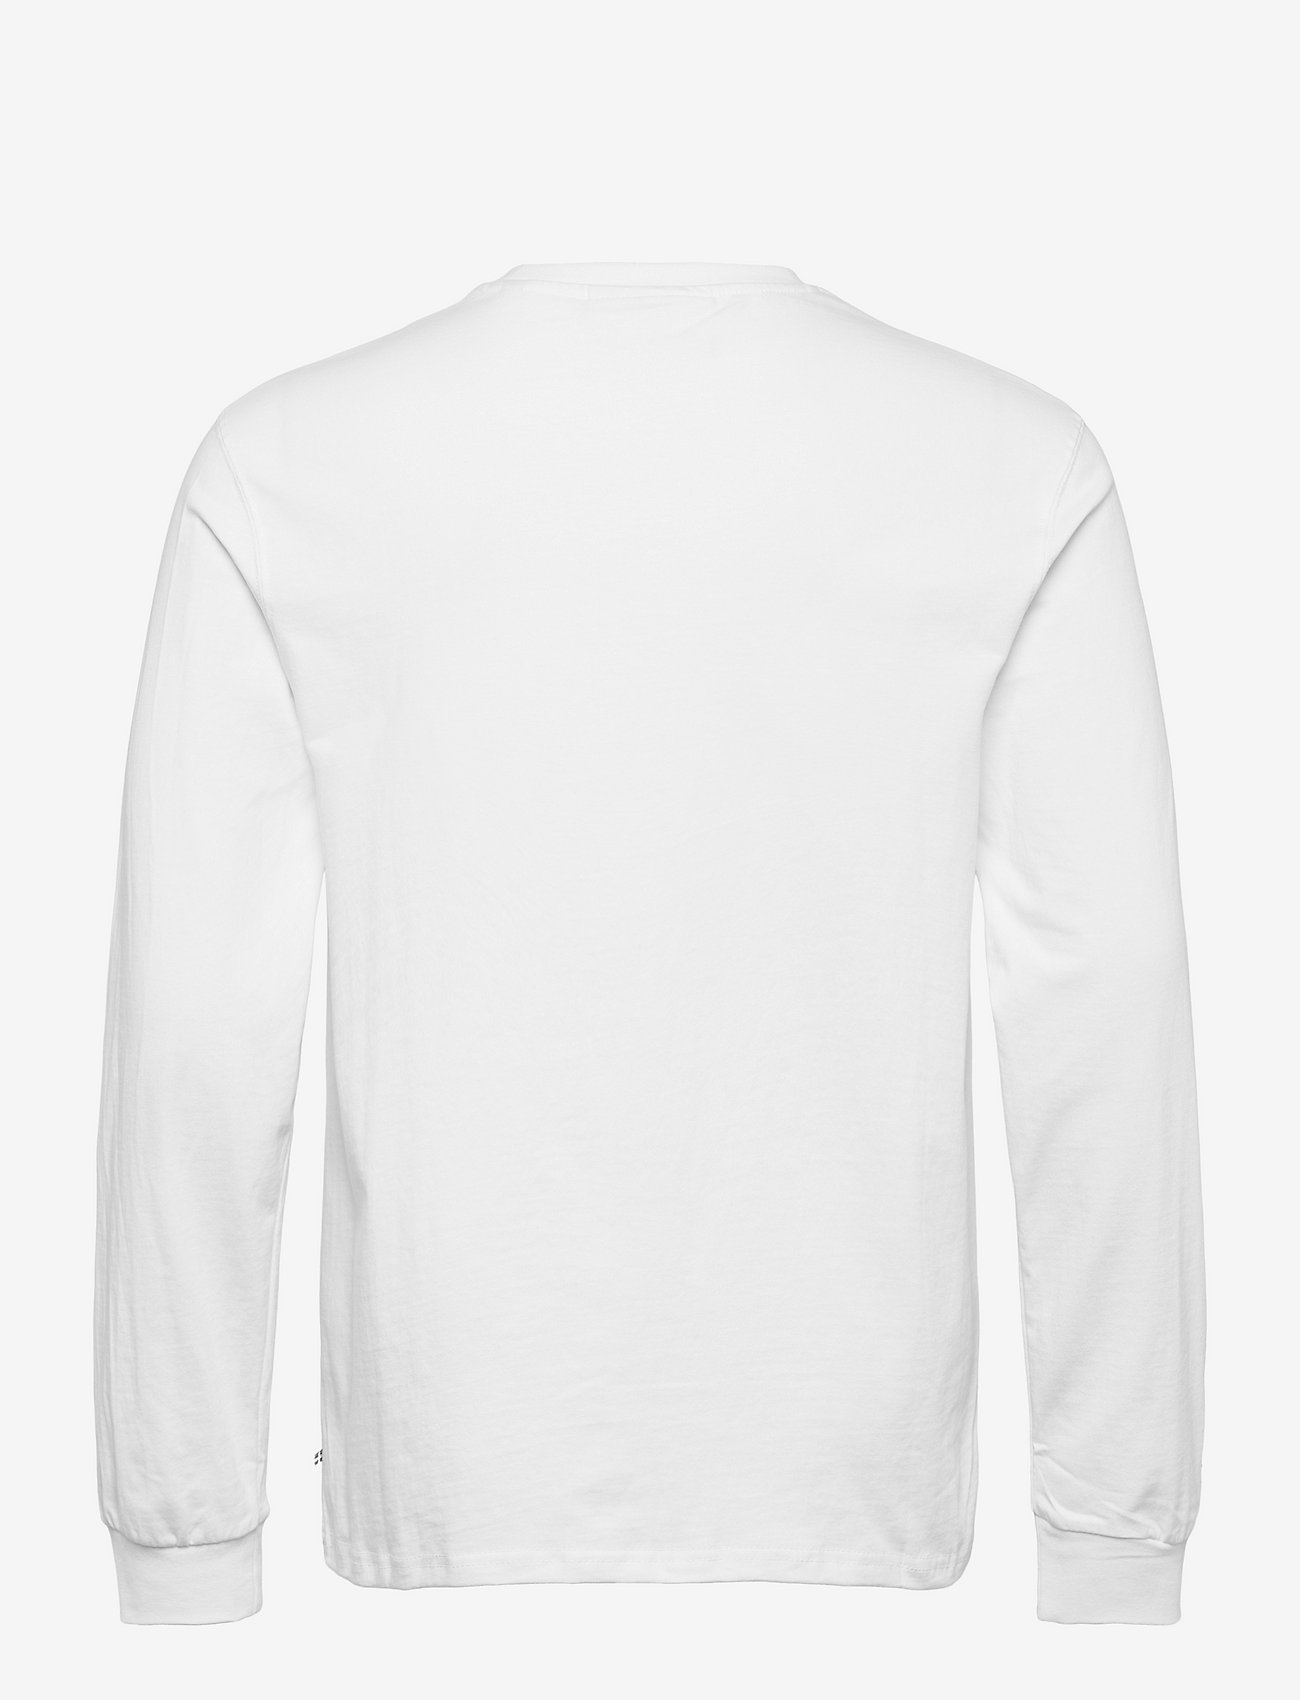 HAN Kjøbenhavn - Casual Tee Long Sleeve - laisvalaikio marškinėliai - white logo - 1